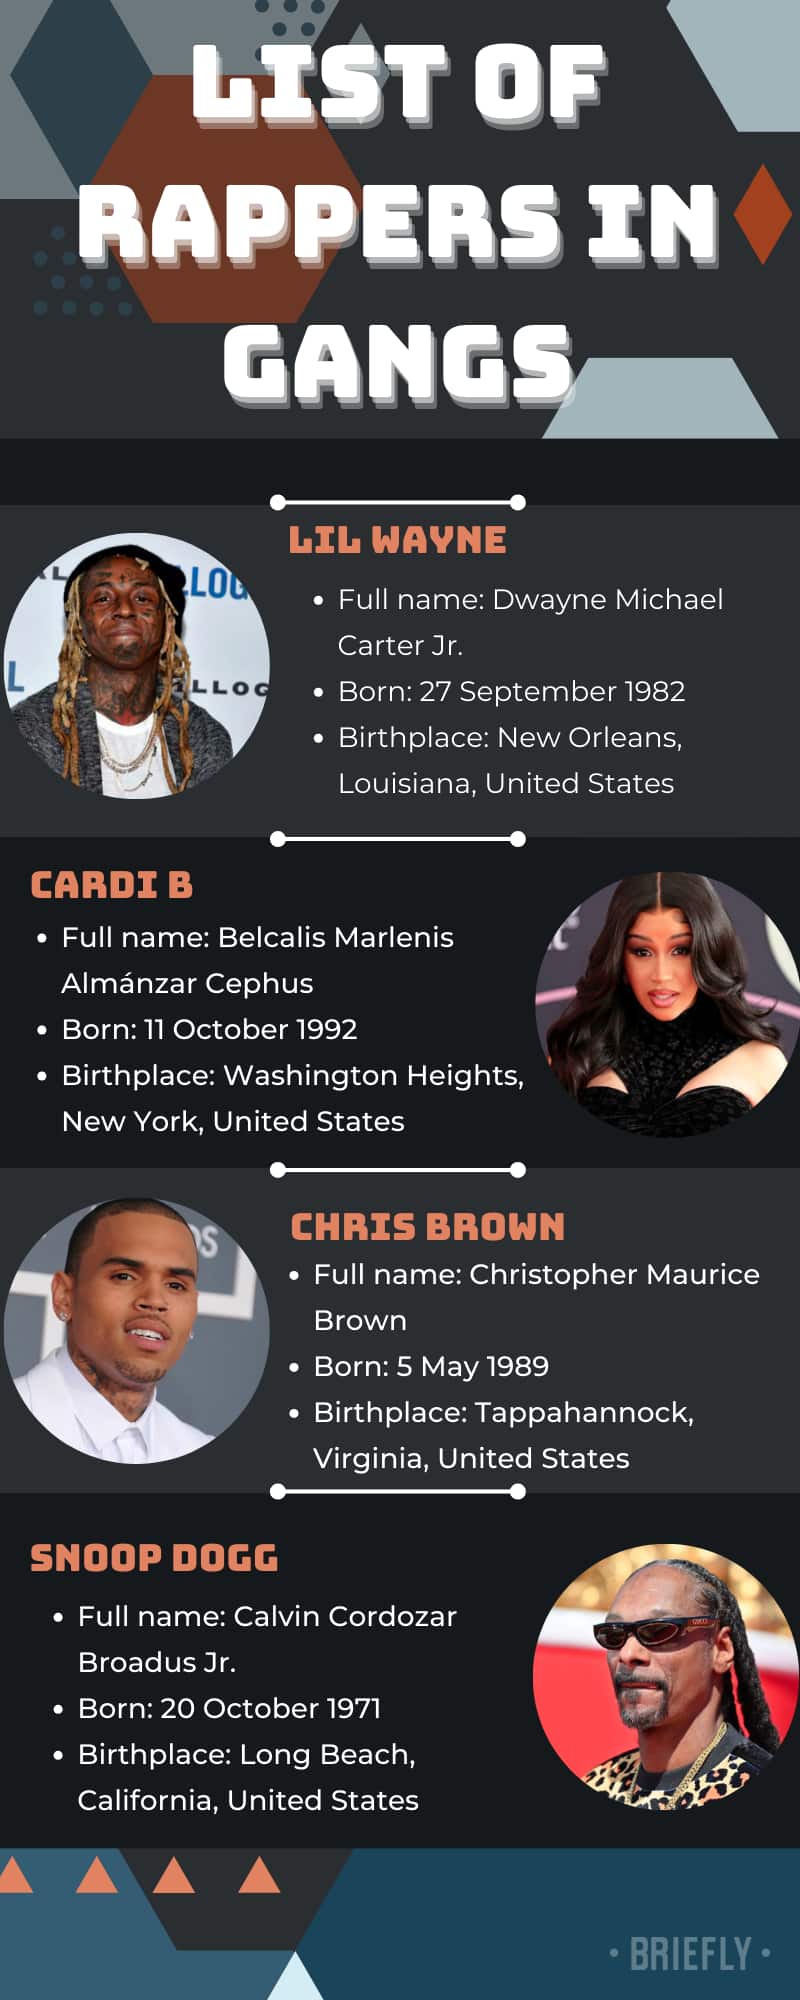 Top list of rappers in gangs